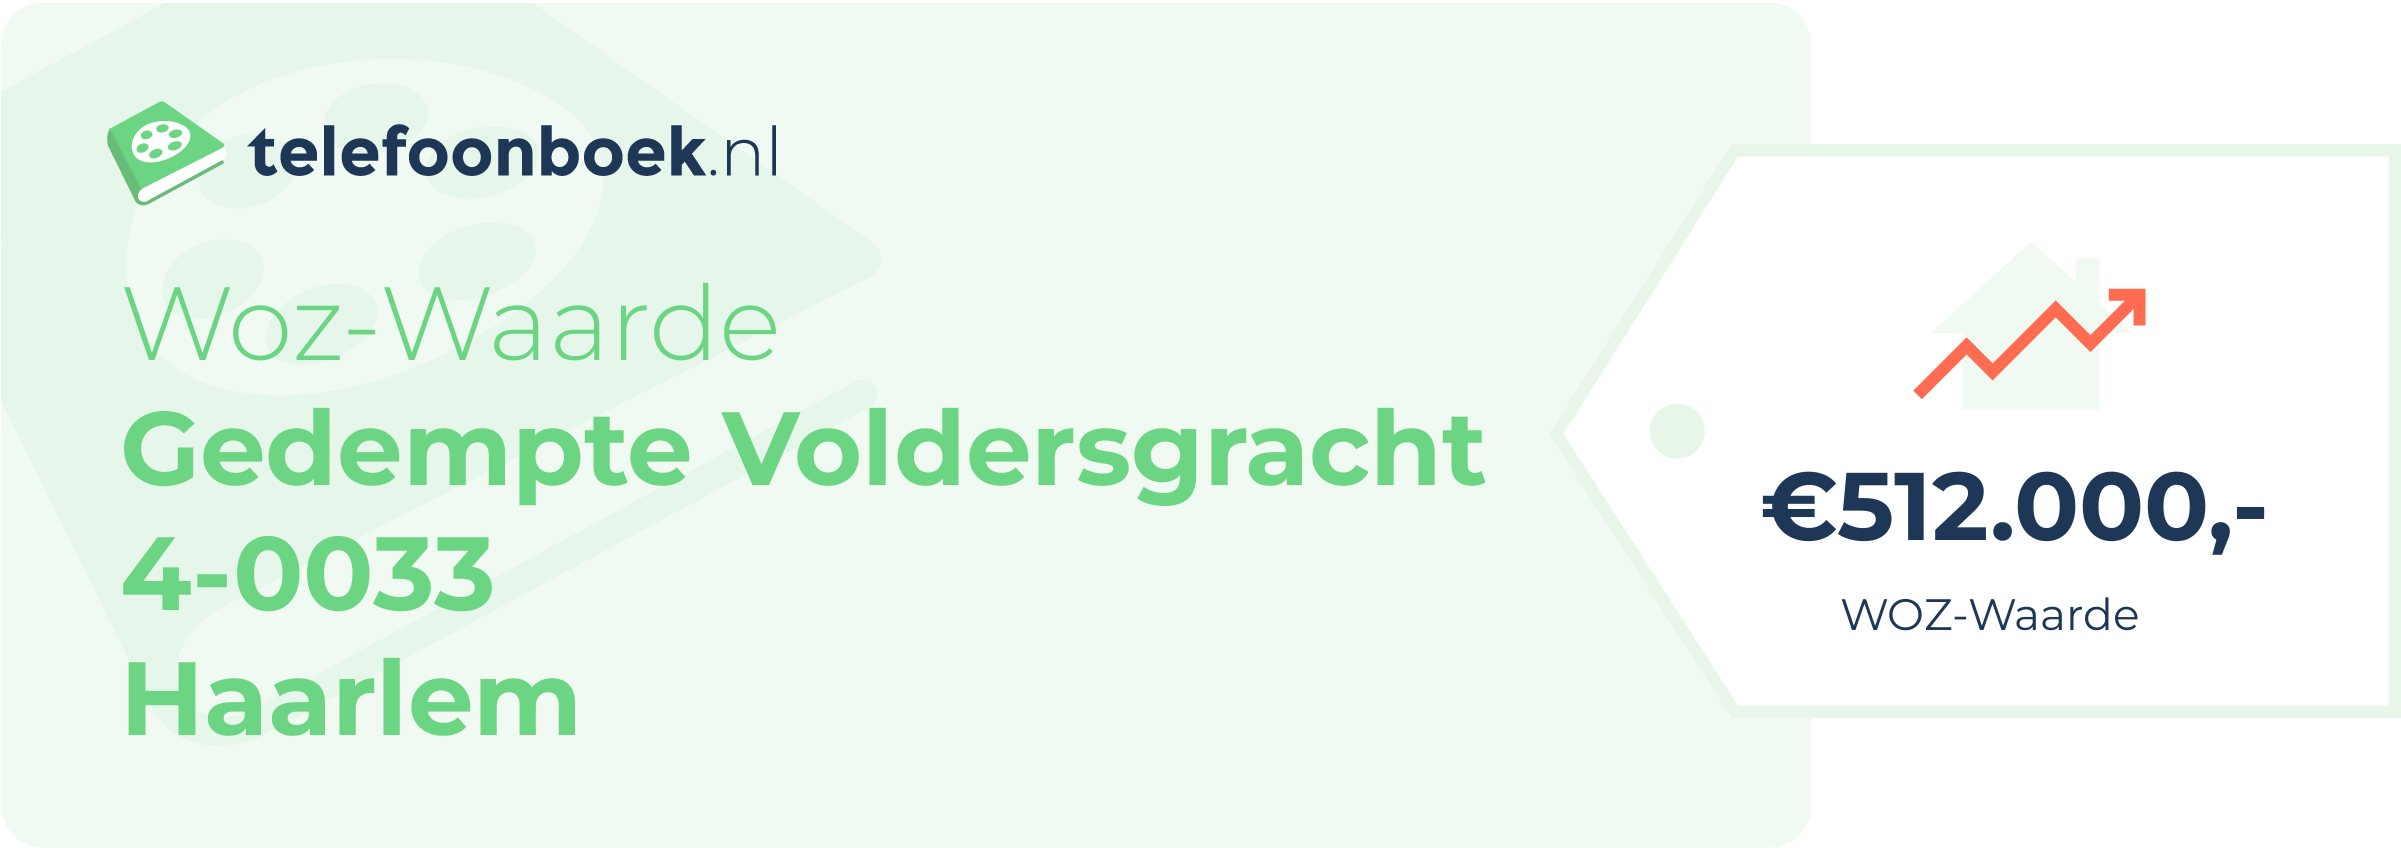 WOZ-waarde Gedempte Voldersgracht 4-0033 Haarlem